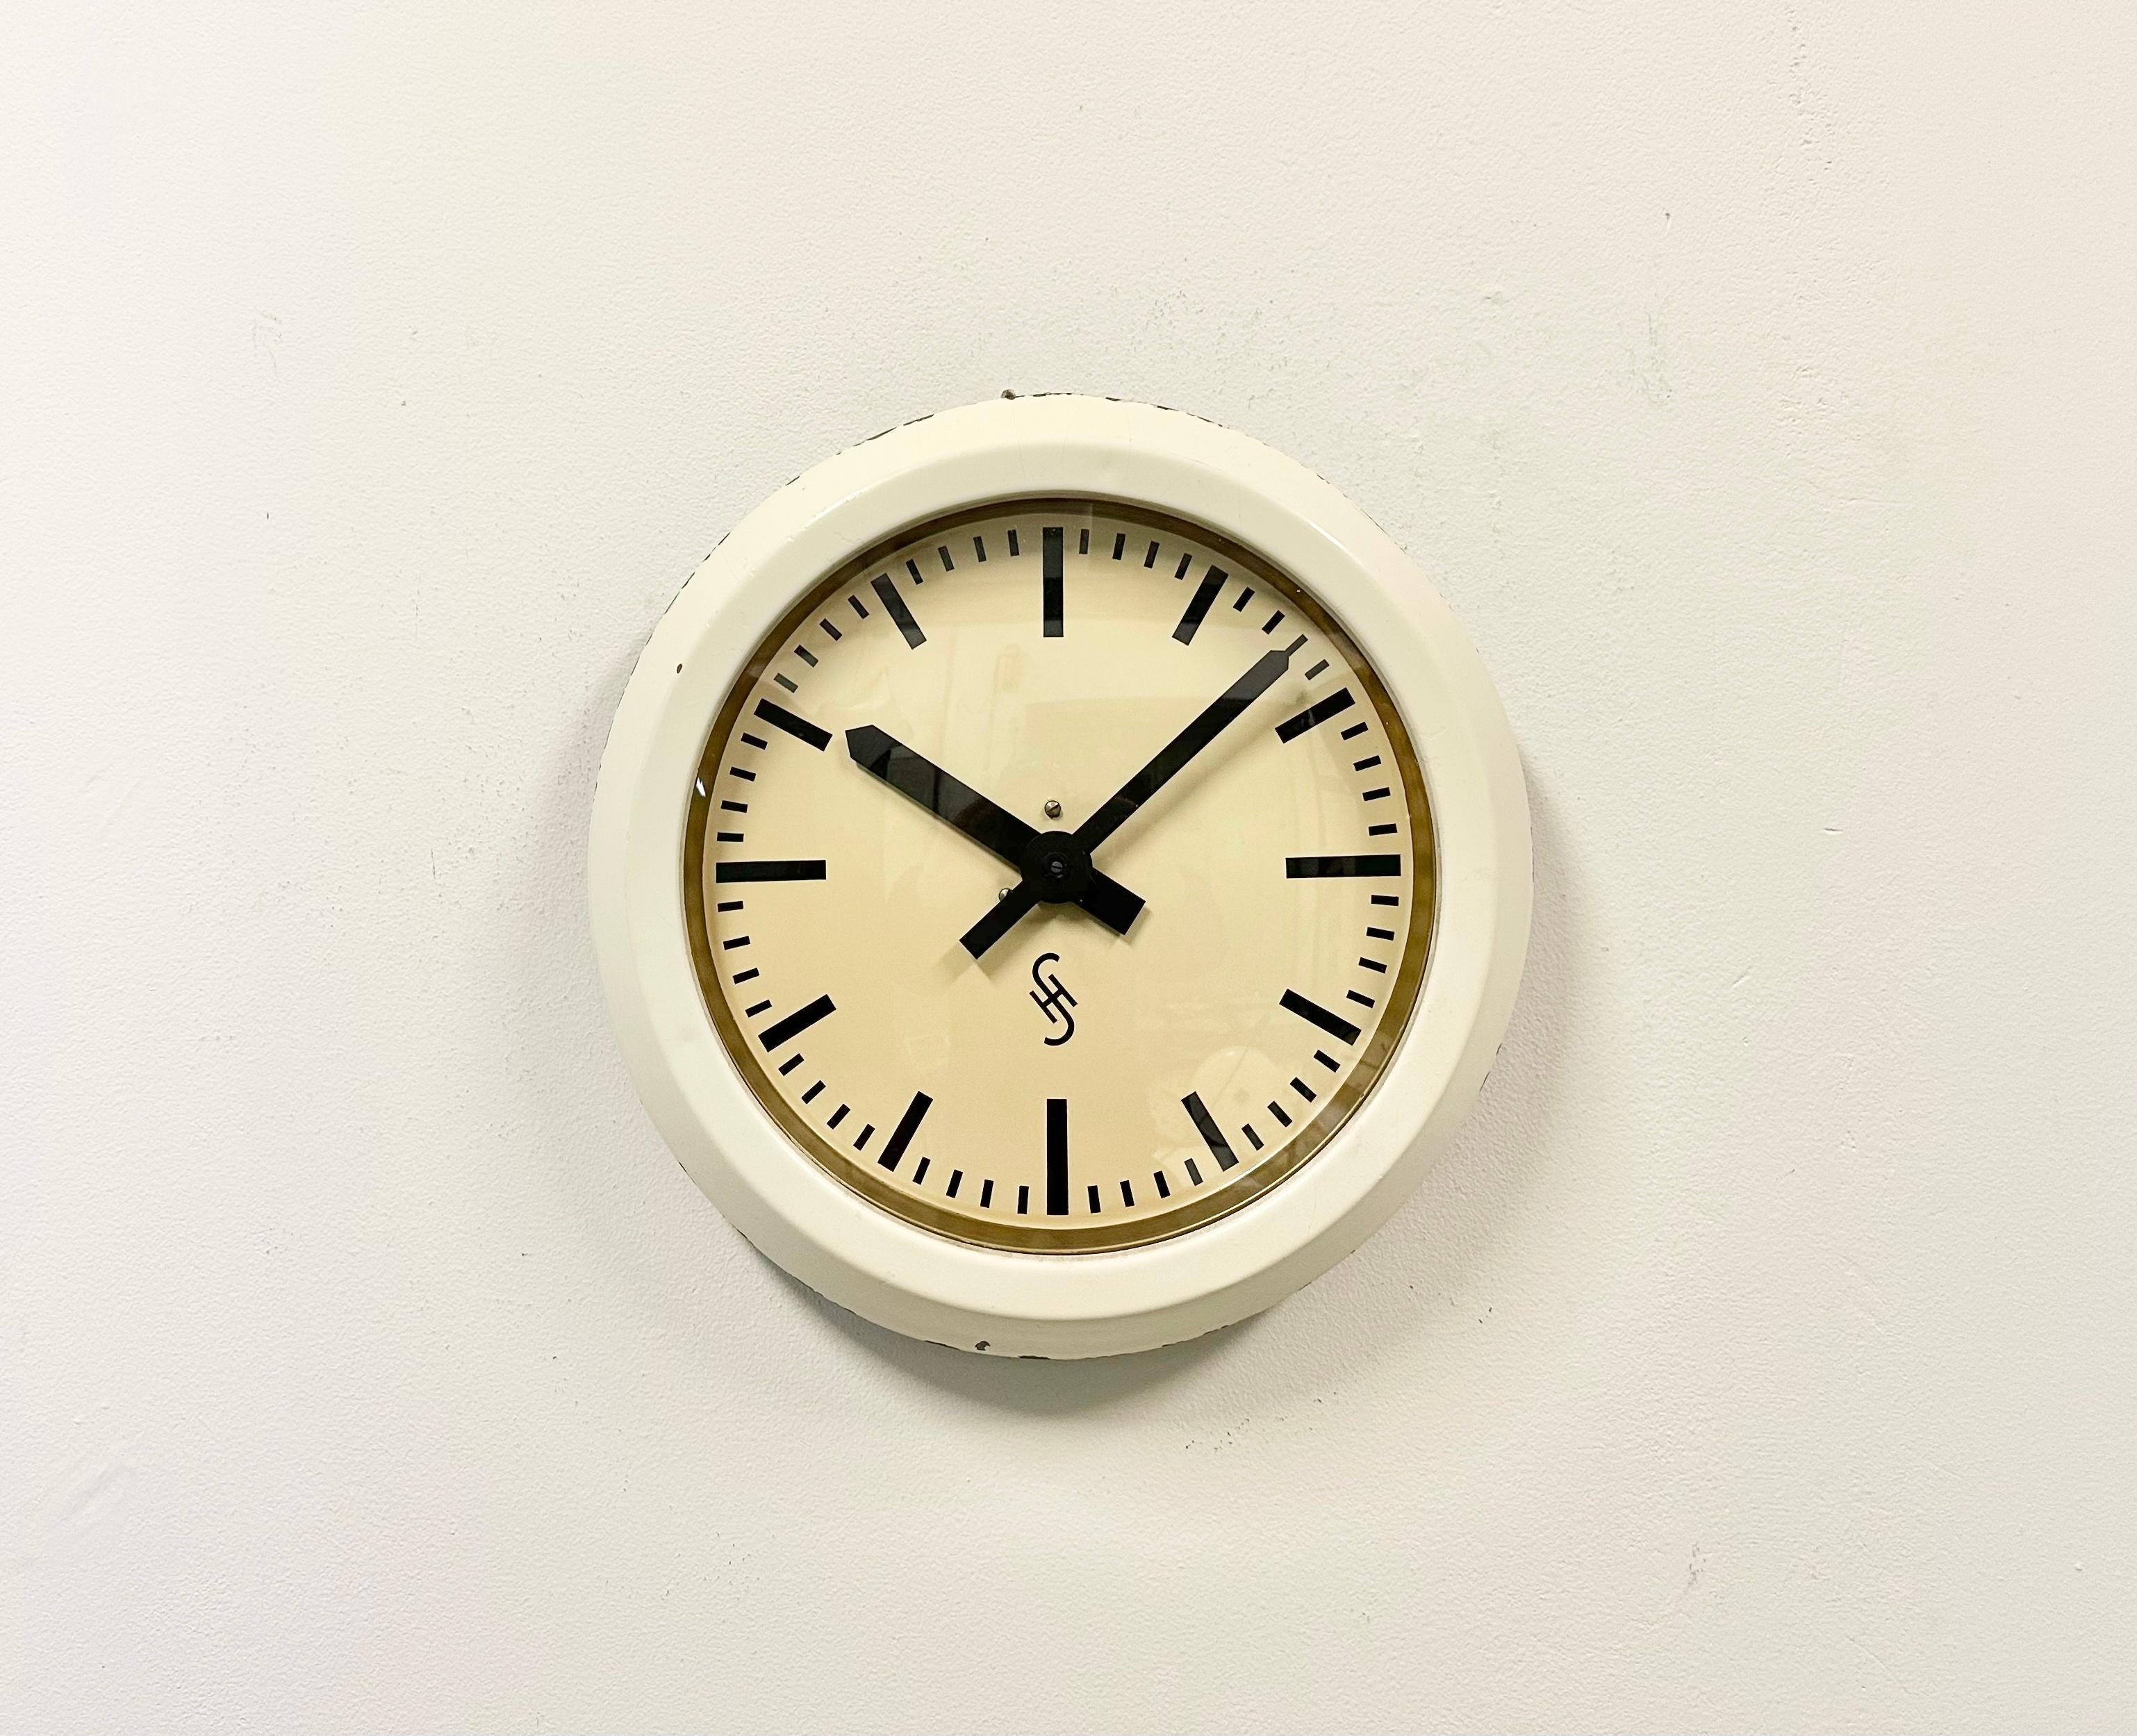 Cette horloge murale a été produite par Siemens et Halske en Allemagne dans les années 1950. Il est doté d'un cadre métallique beige, d'un cadran en aluminium et d'un couvercle en verre transparent. La pièce a été convertie en un mécanisme